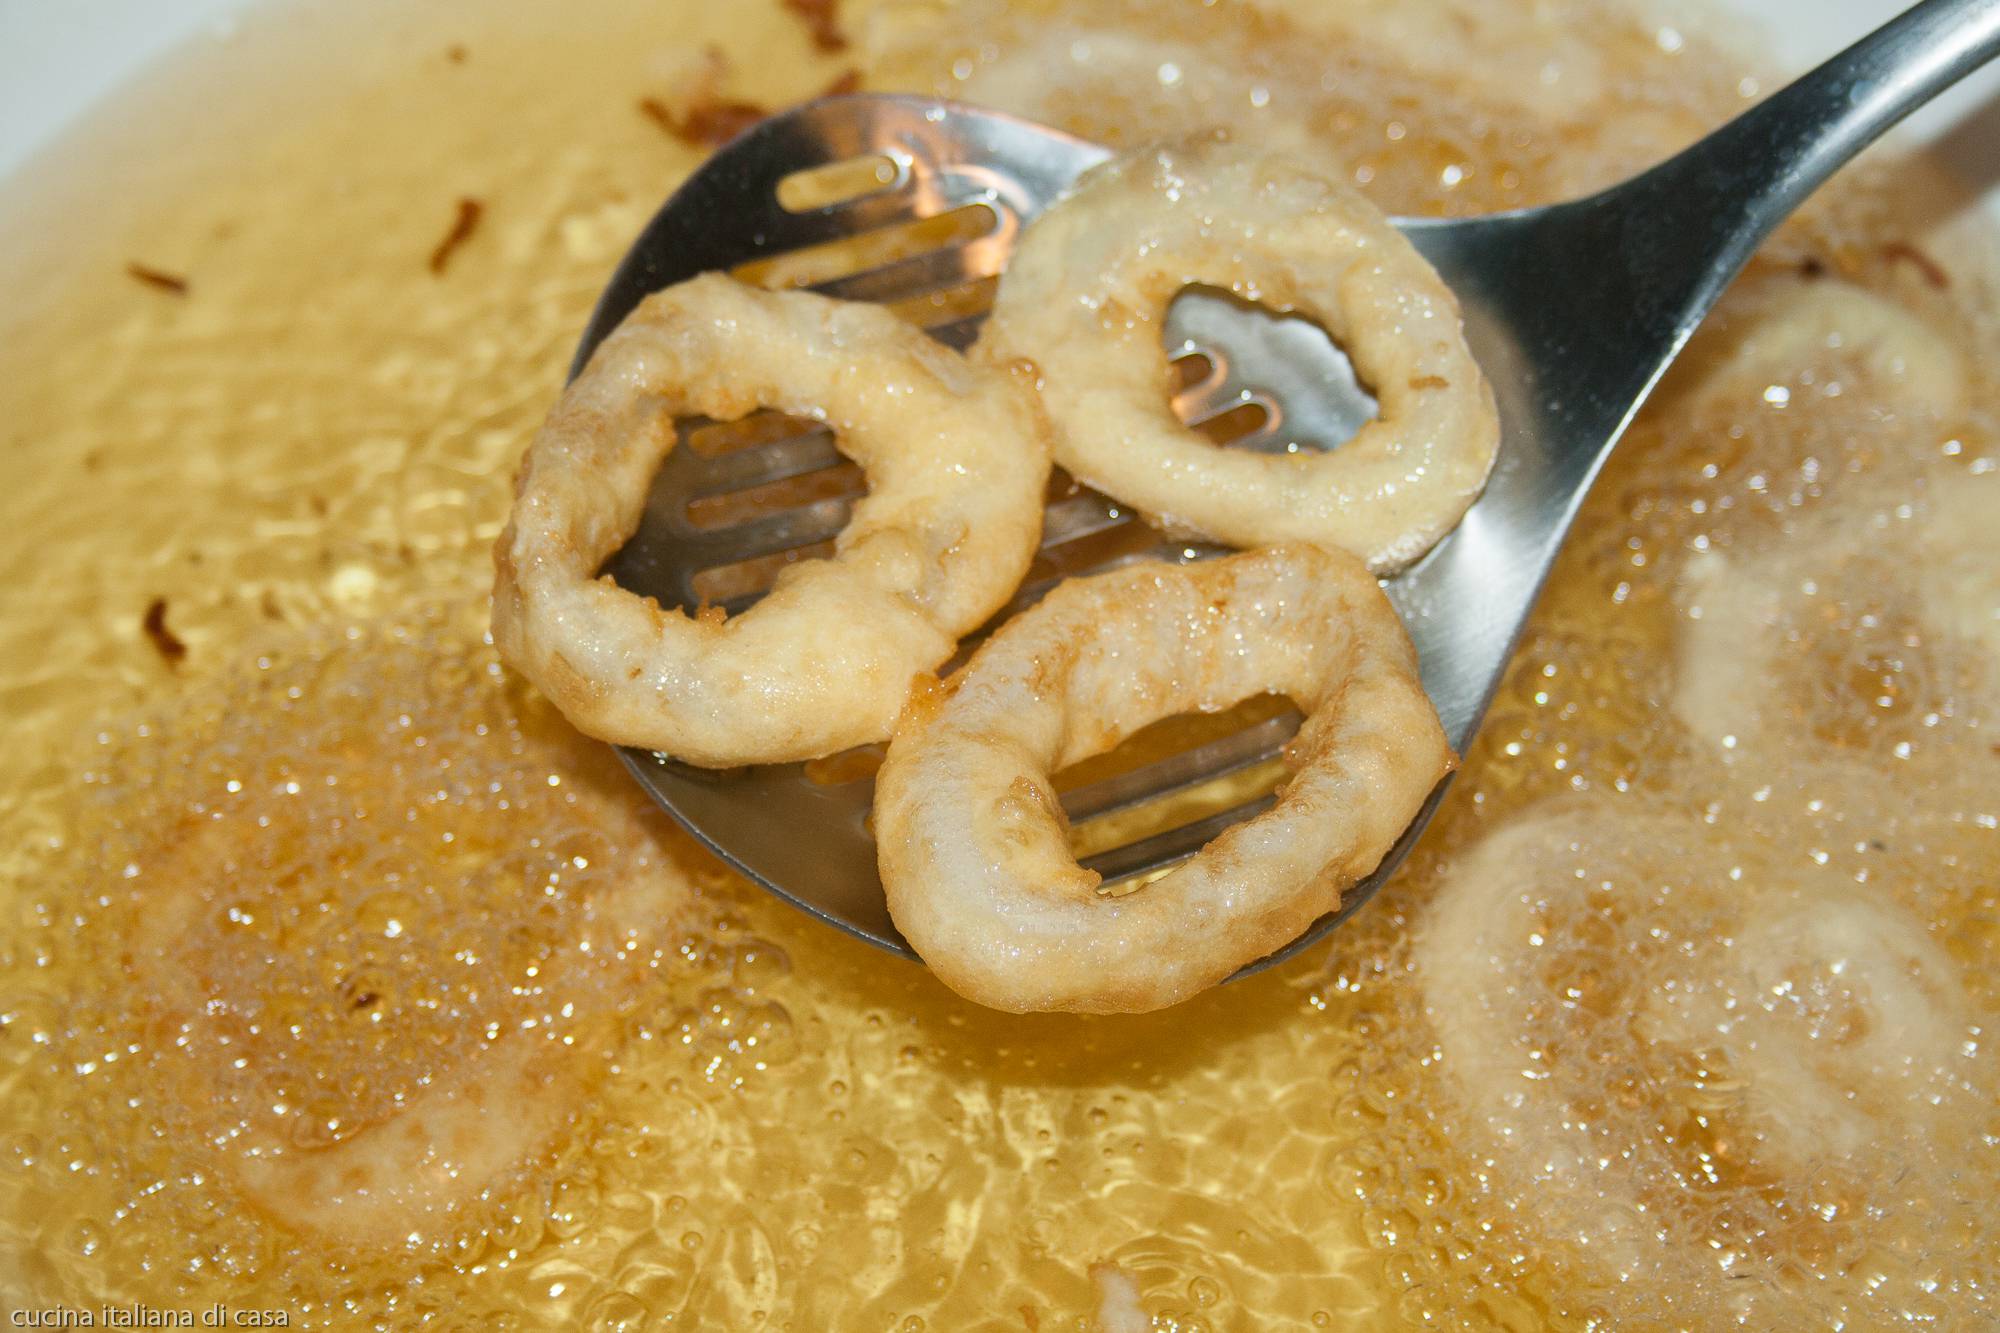 estrarre anelli calamaro fritti da olio